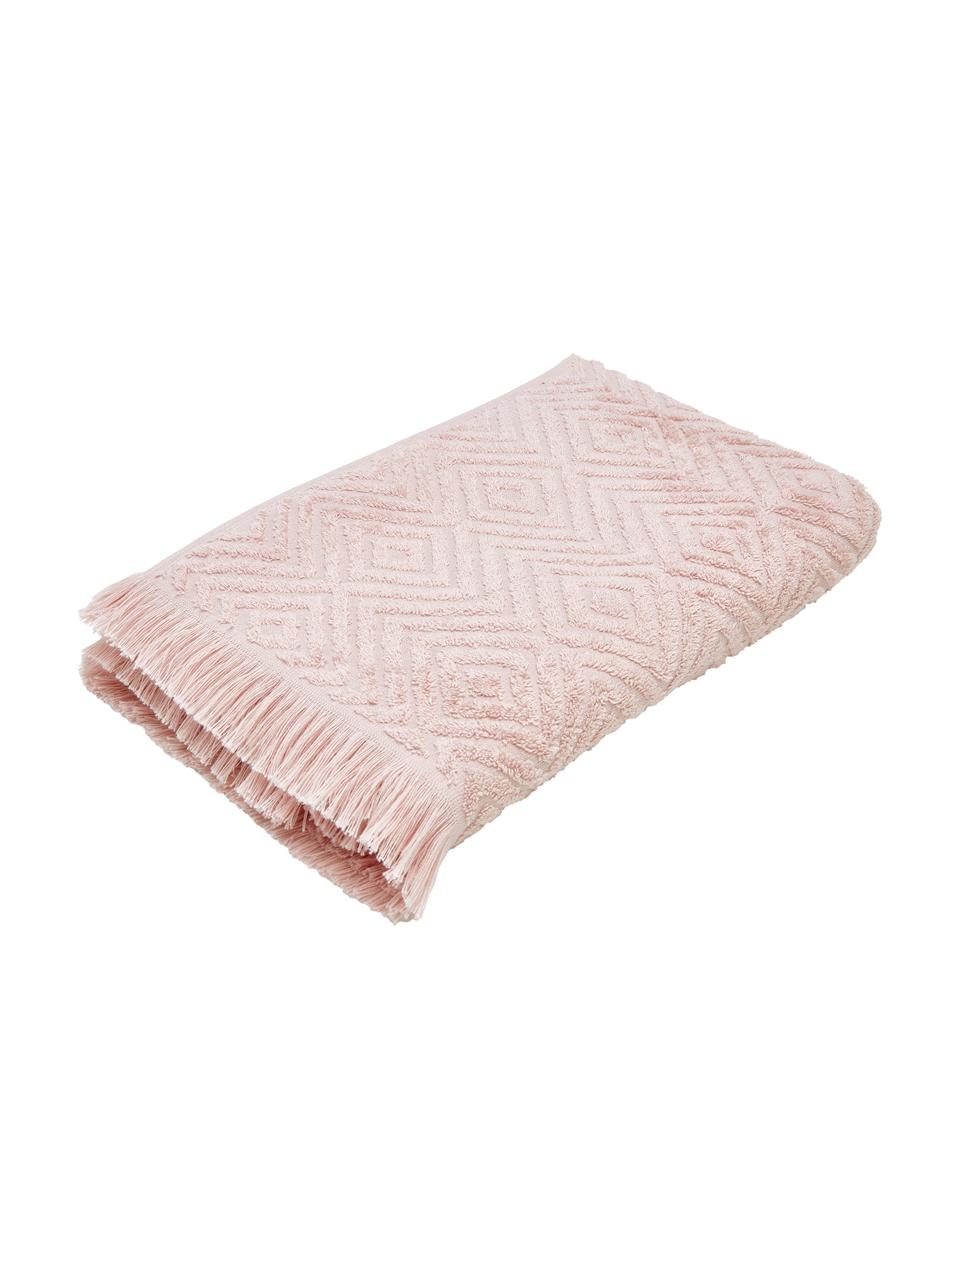 Ręcznik z wypukłą strukturą Jacqui, różne rozmiary, Blady różowy, Ręcznik do rąk, S 50 x D 100 cm, 2 szt.